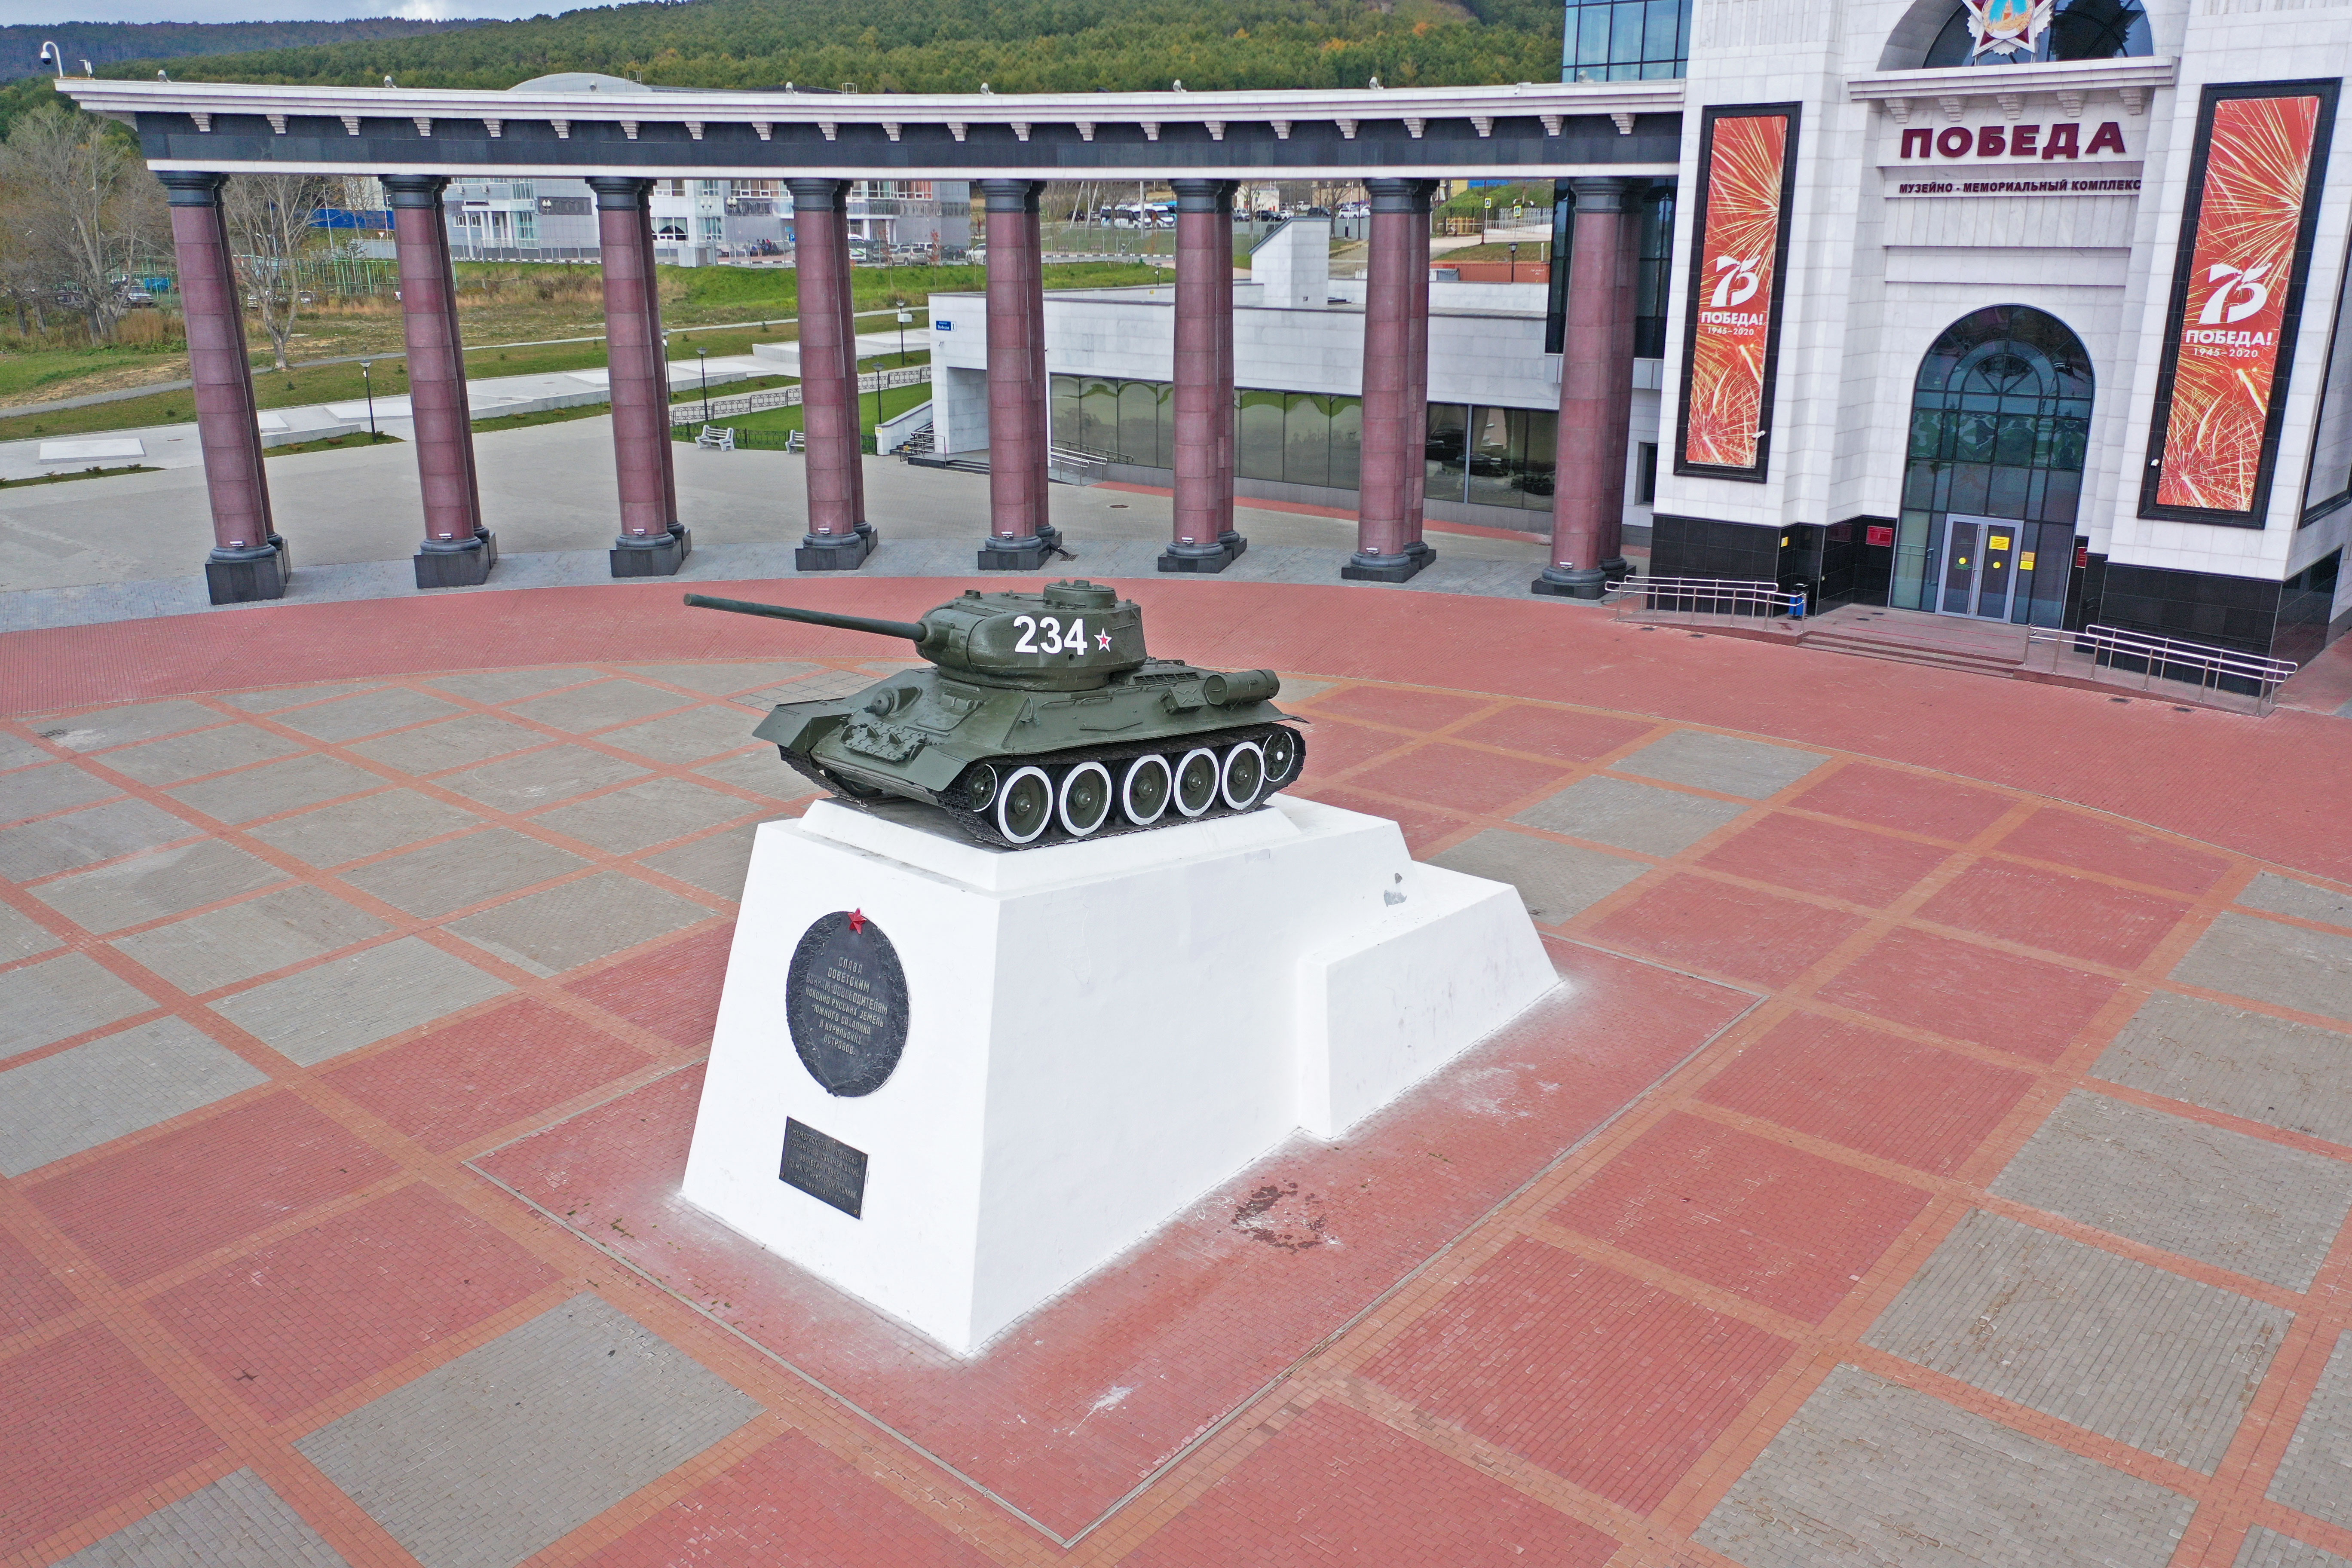 проспект победы южно сахалинск фото